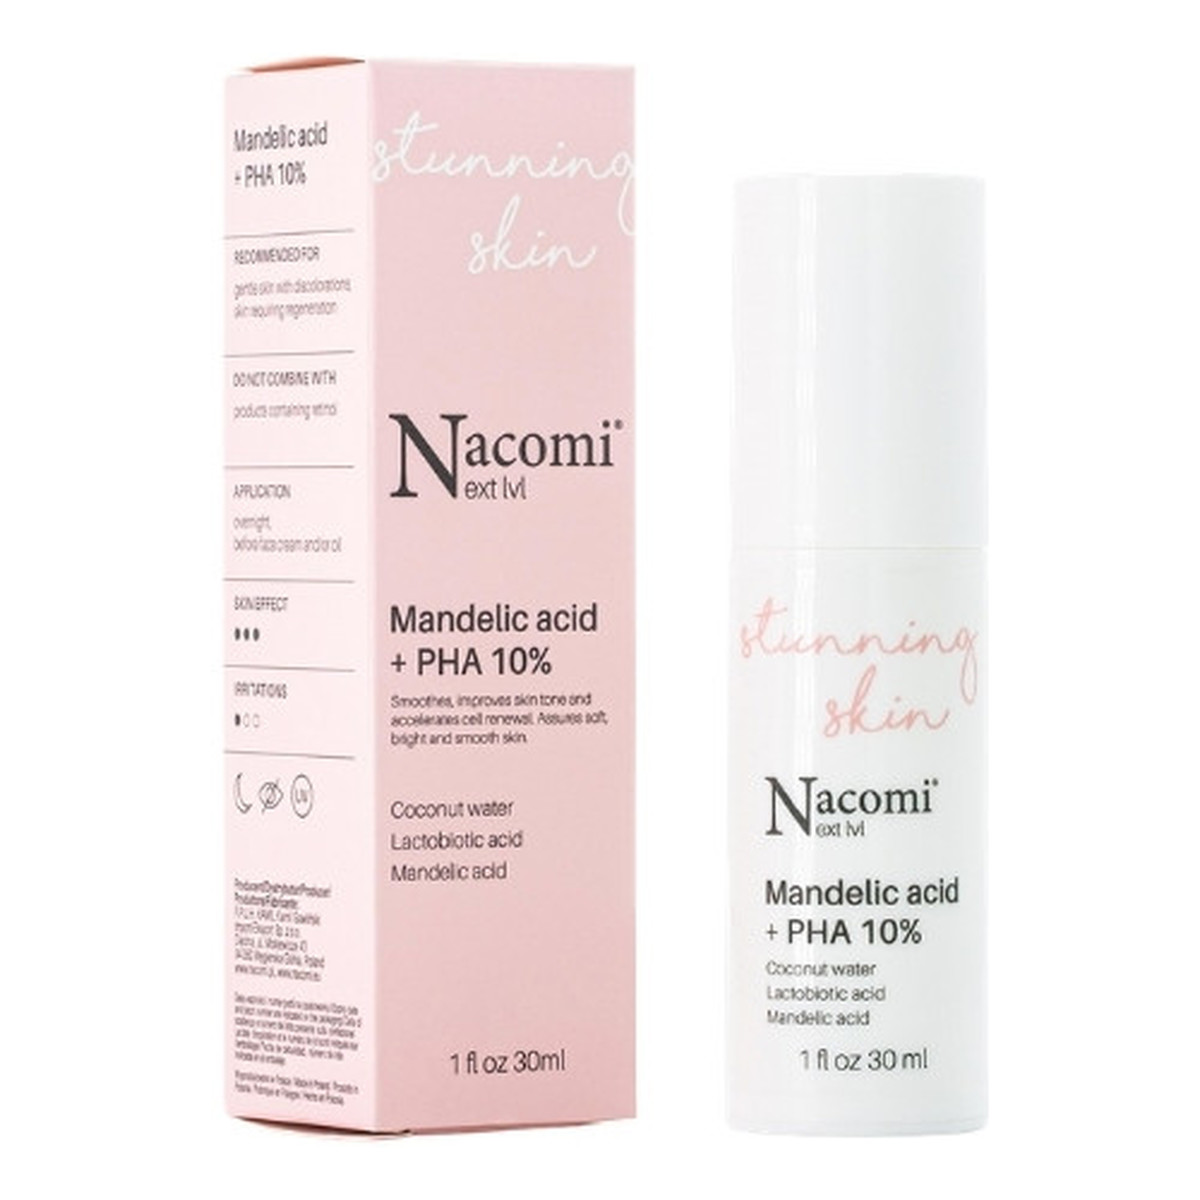 Nacomi Next Level Kwas migdałowy + PHA 10% serum do twarzy 30ml